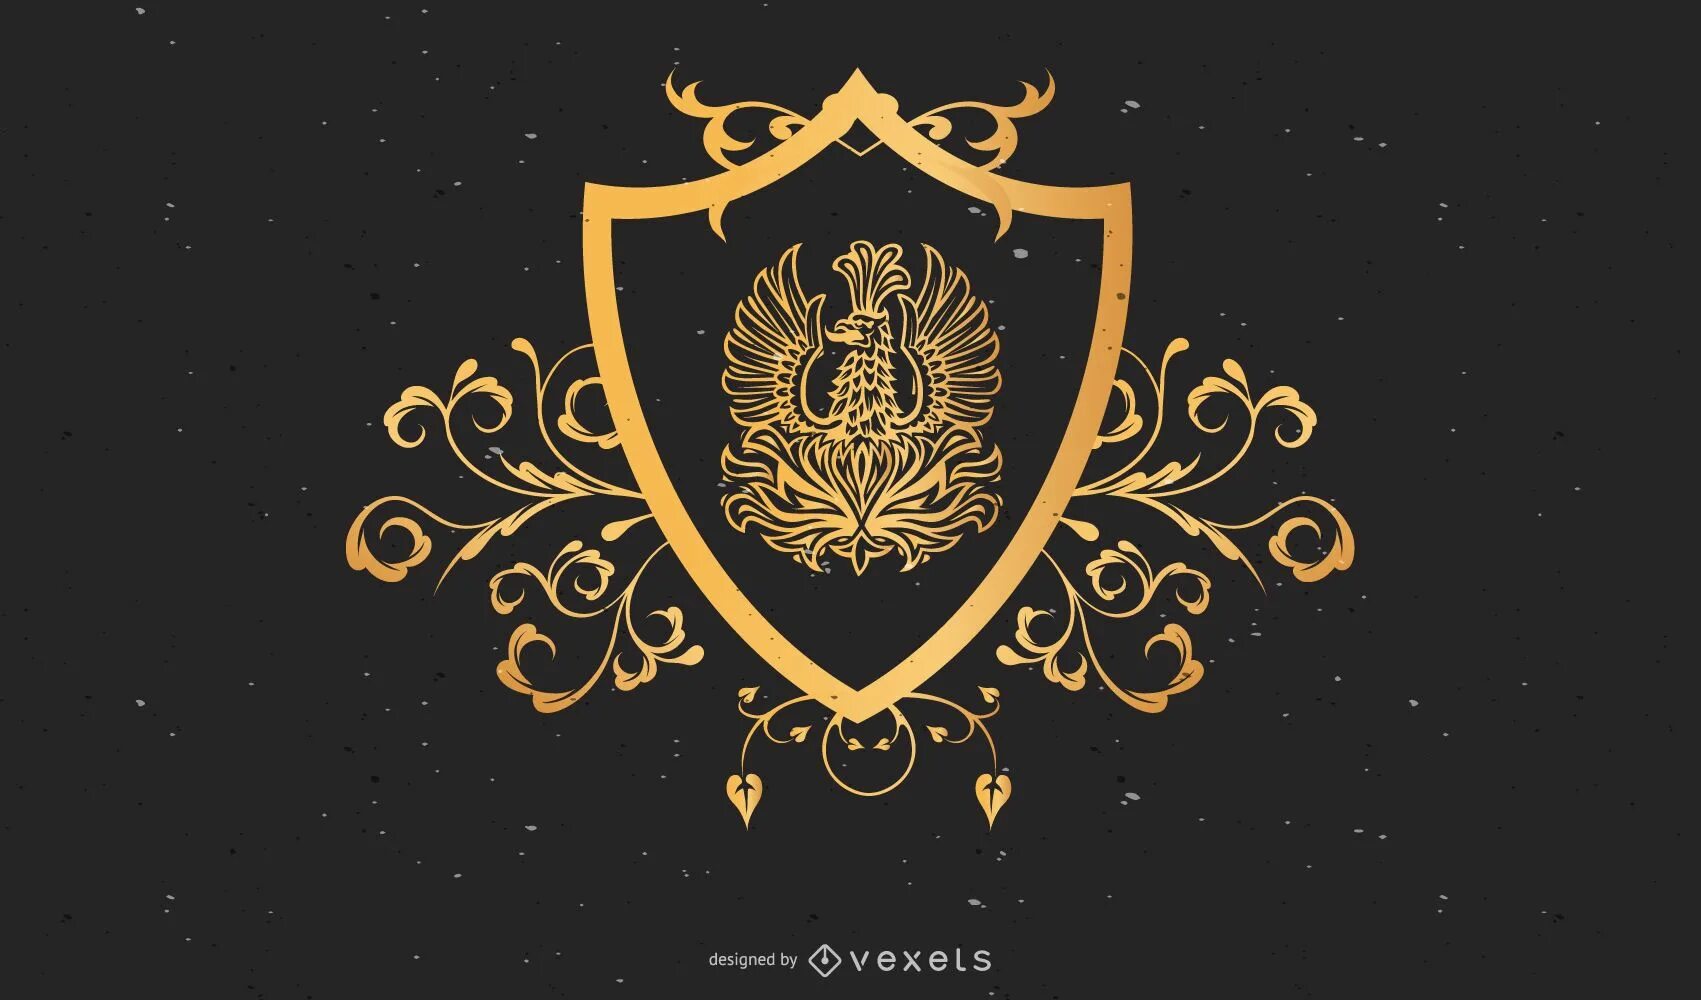 Логотип Golden Design. Винтажная геральдика. Щит вектор. Вектор Царская геральдика фон. Ornate shield